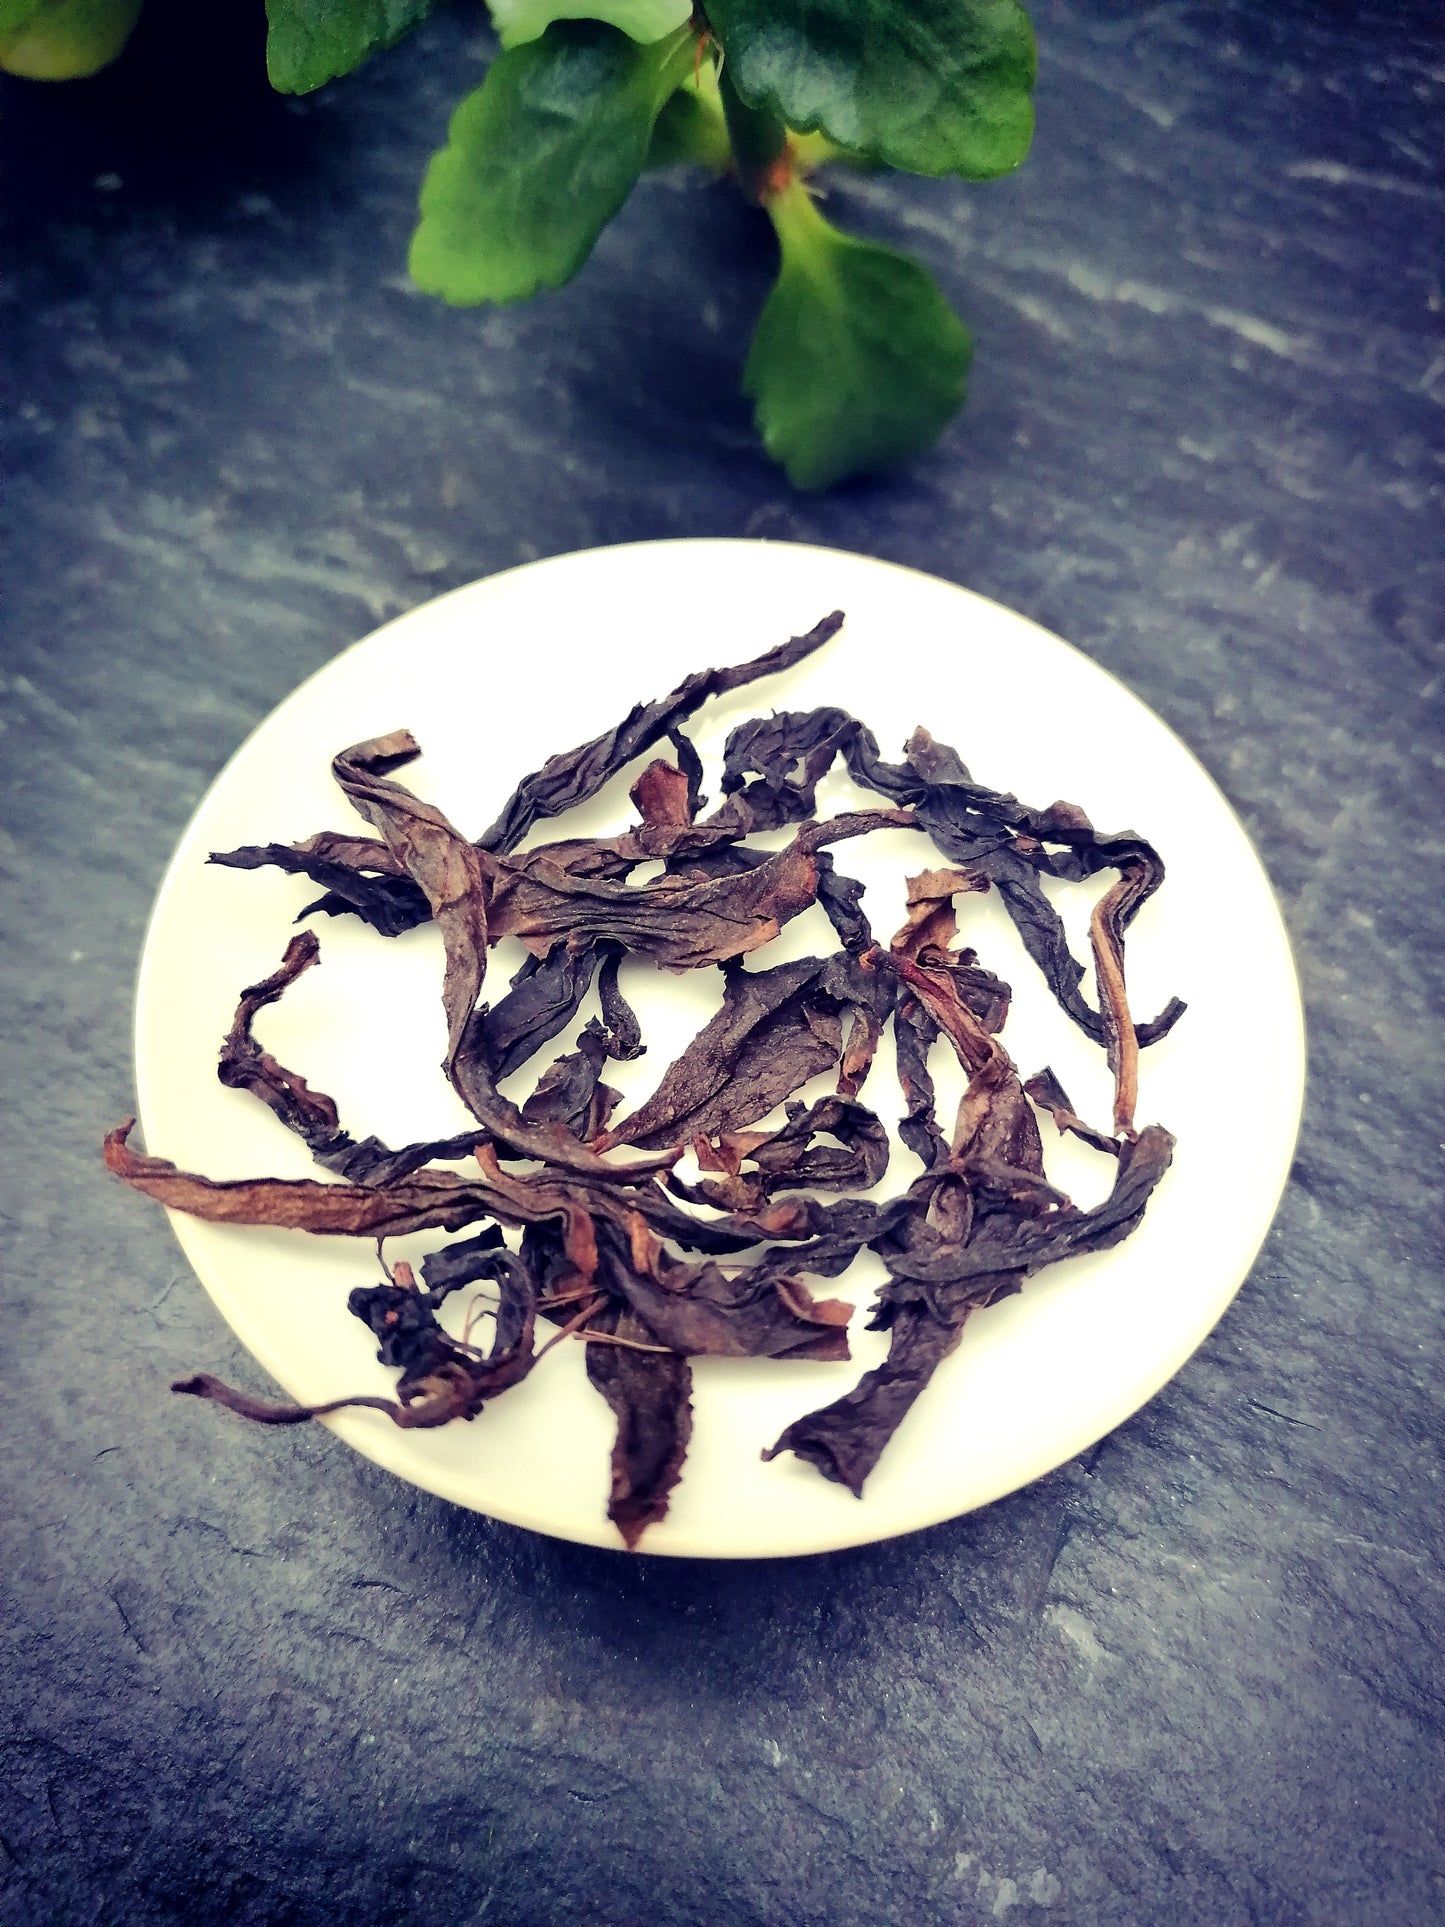 Rou Gui Wuyi Rock Oolong Tea | "Cinnamon Bark" Wuyi Yancha Oolong Tea